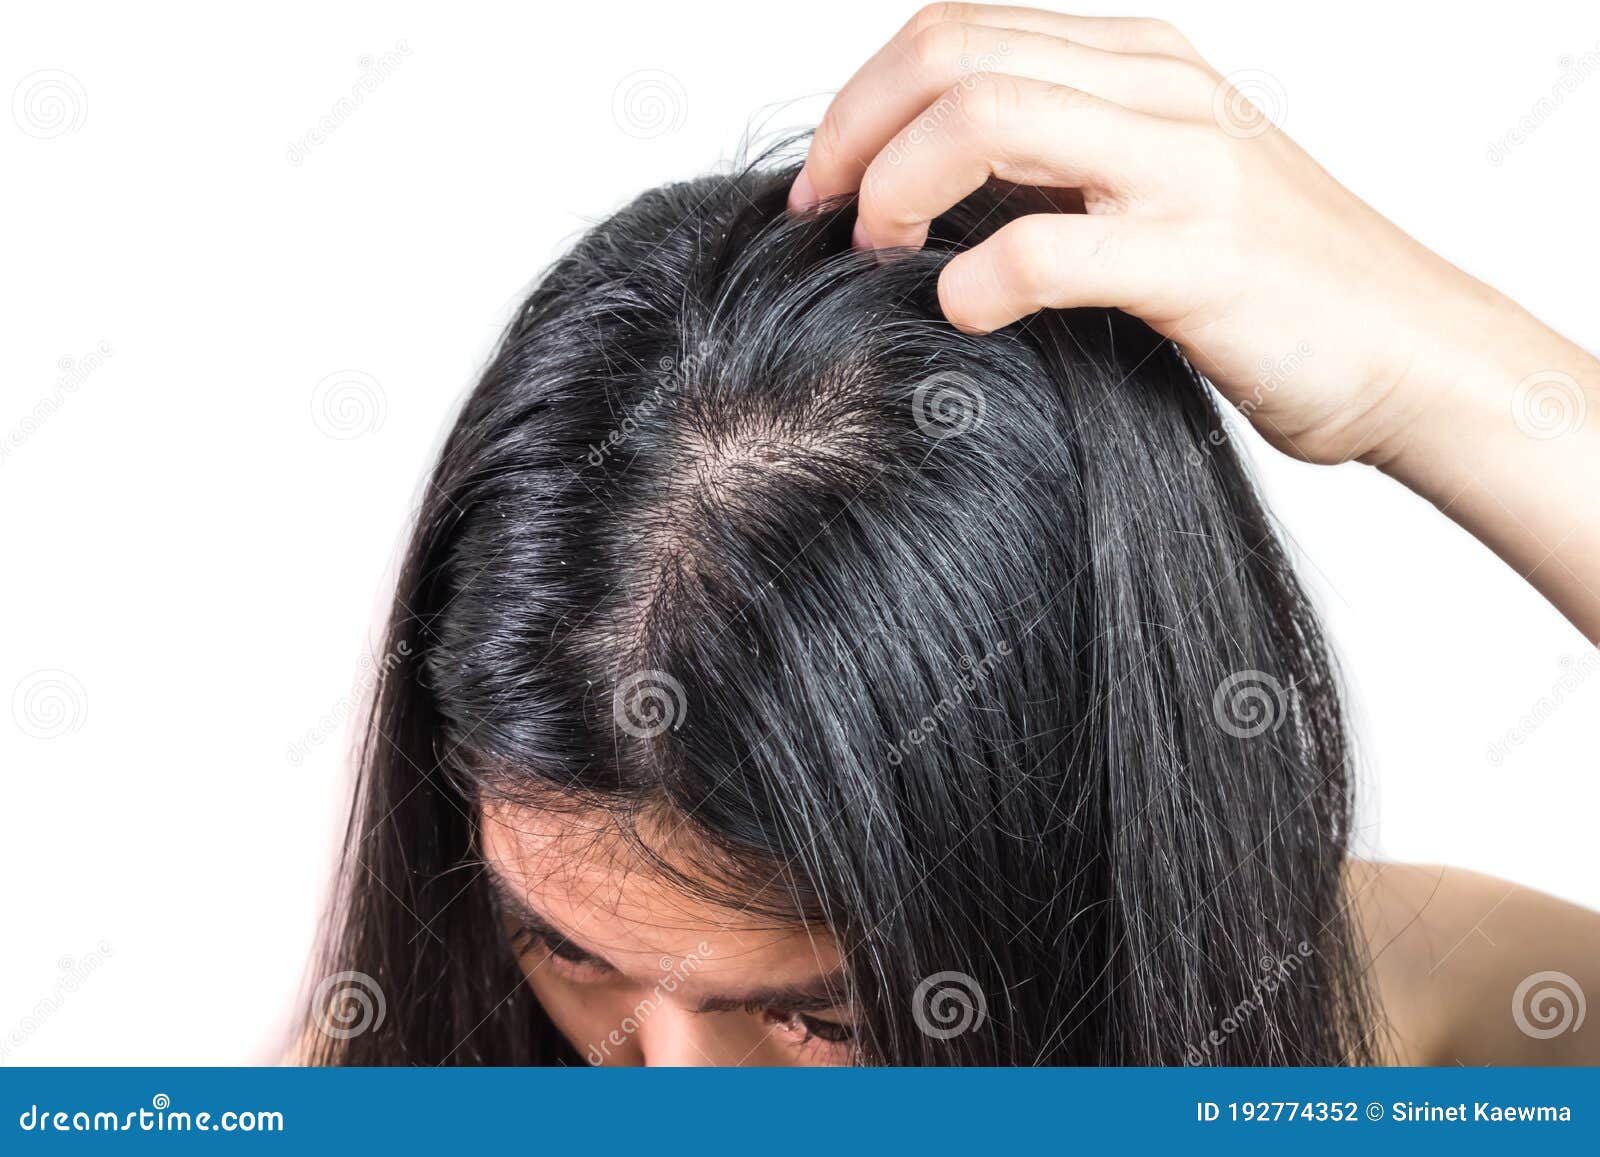 Nandana Skin Care - Can Dandruff Cause Hair Loss? - Suryaraopet, Vijayawada